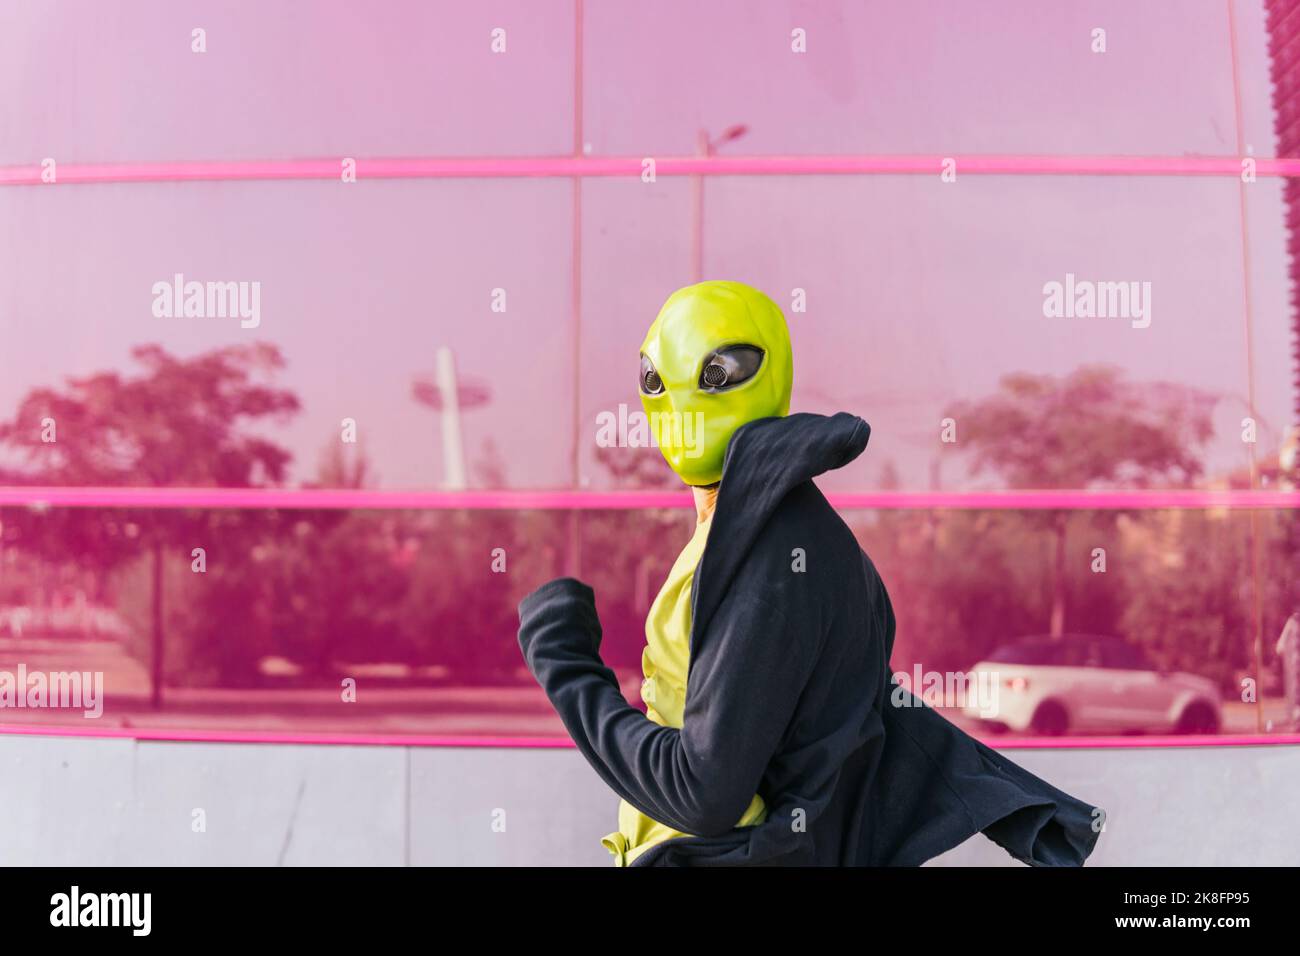 Homme portant un masque extraterrestre devant un mur en verre rose Banque D'Images